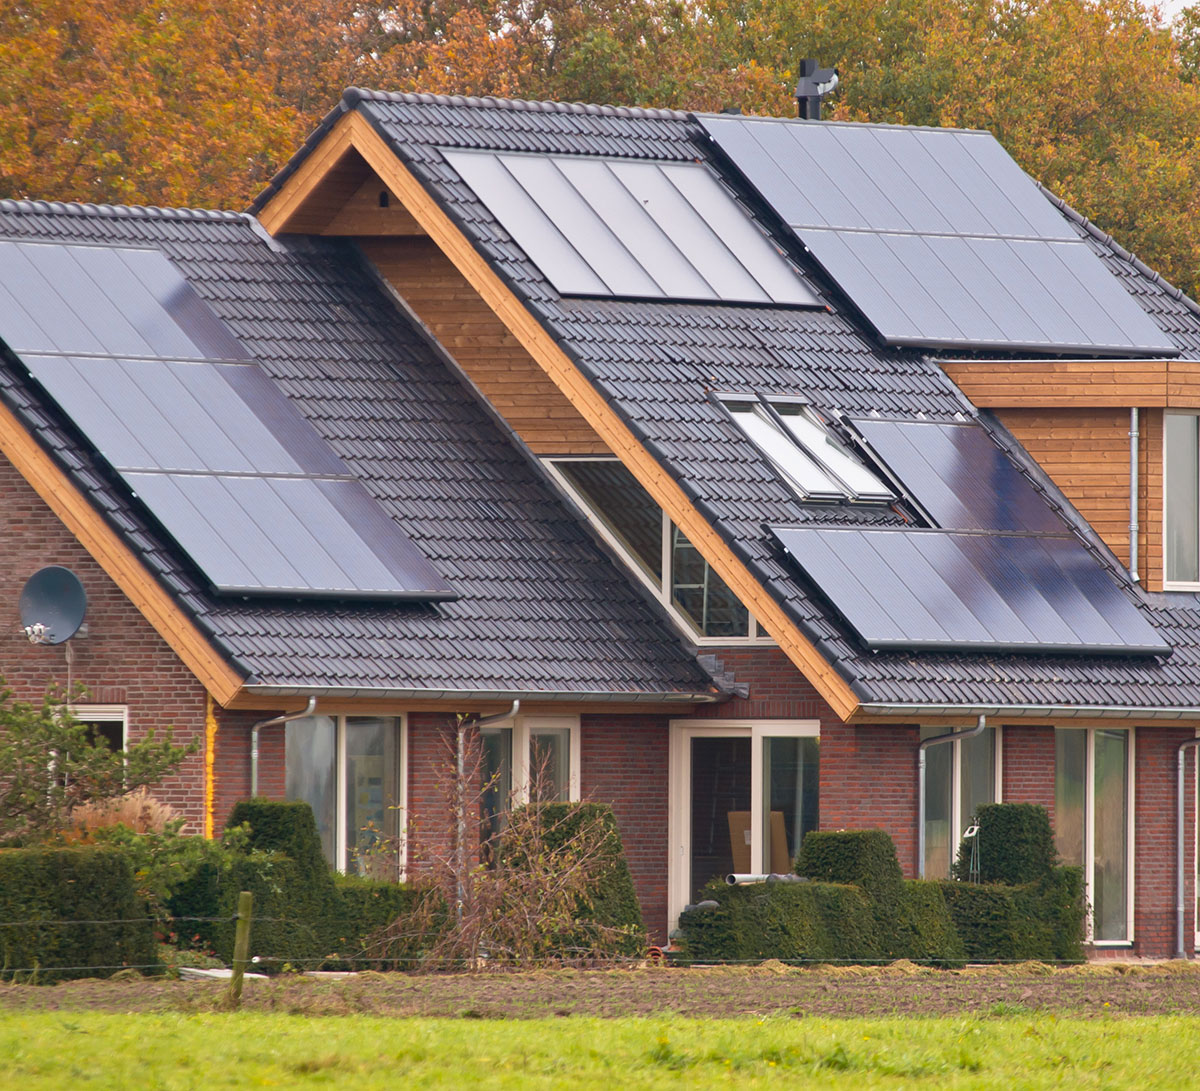 paneles-solares-25-razones-por-las-que-deber-as-instalarlos